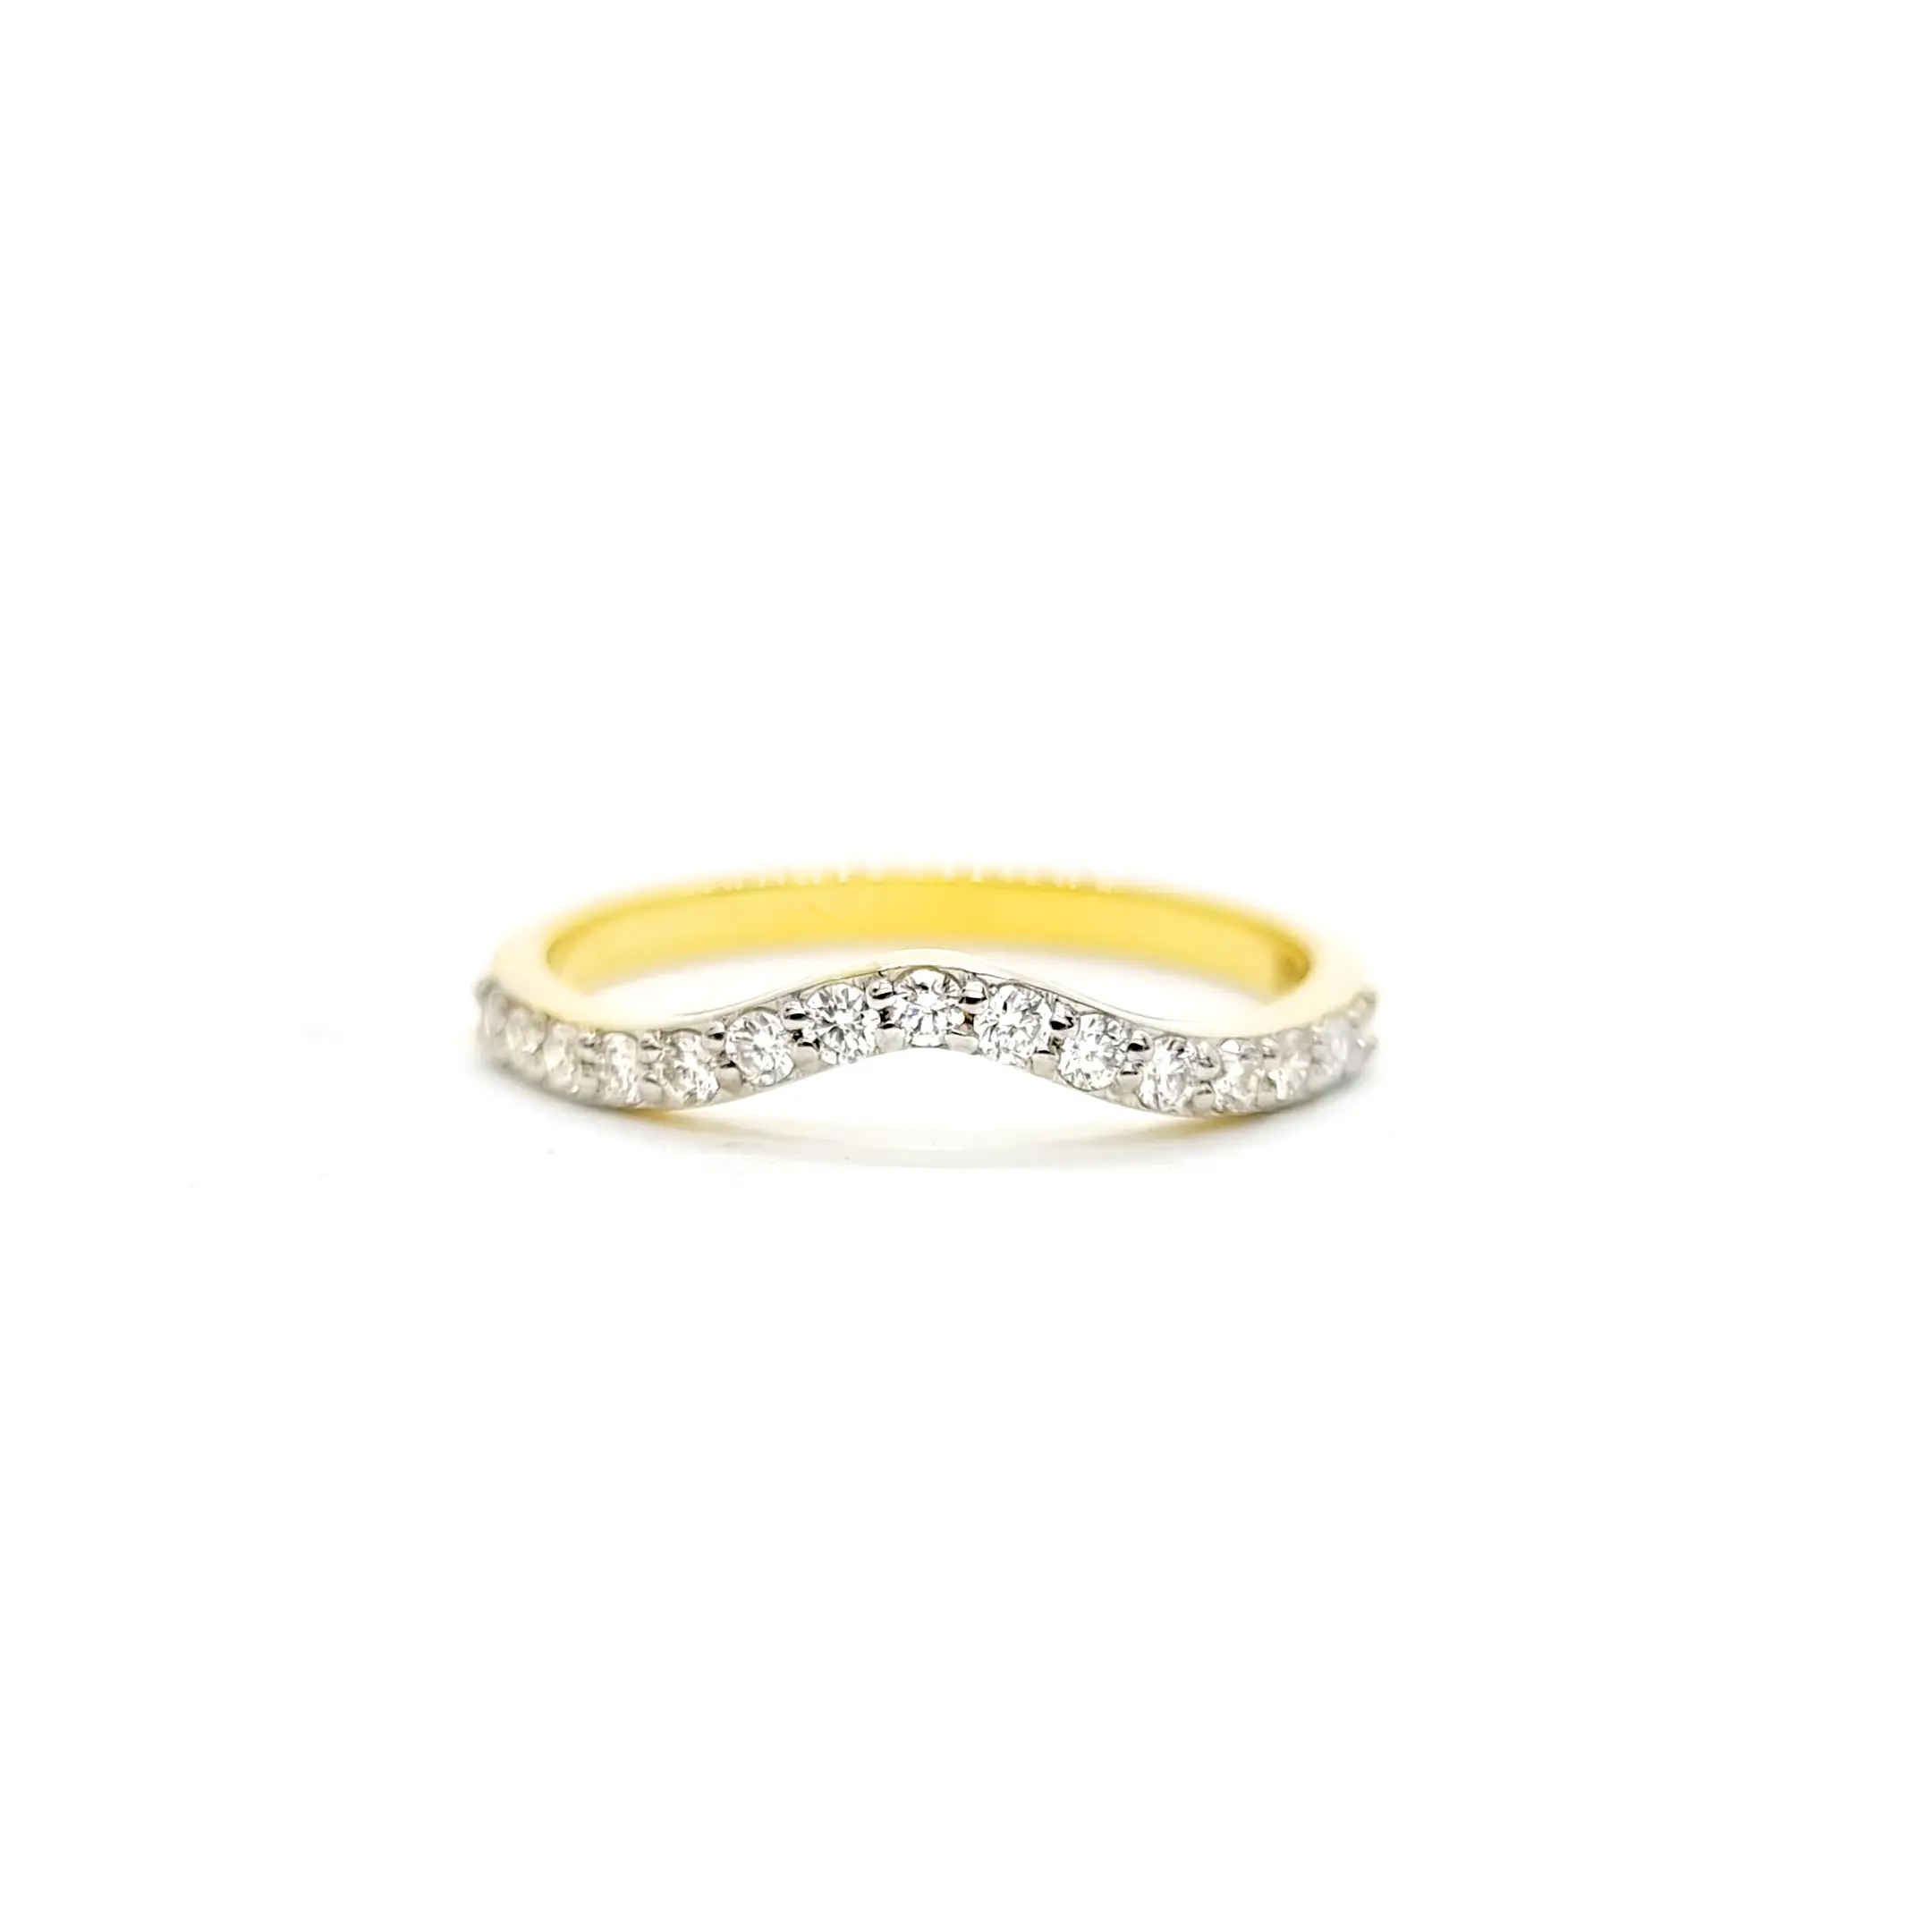 แหวนกลมเพชรธรรมชาติวงแหวนโค้งนิรันดร์14K แข็งสีเหลืองทองเต็มวงซ้อนกันได้โดยผู้ส่งออกอินเดีย